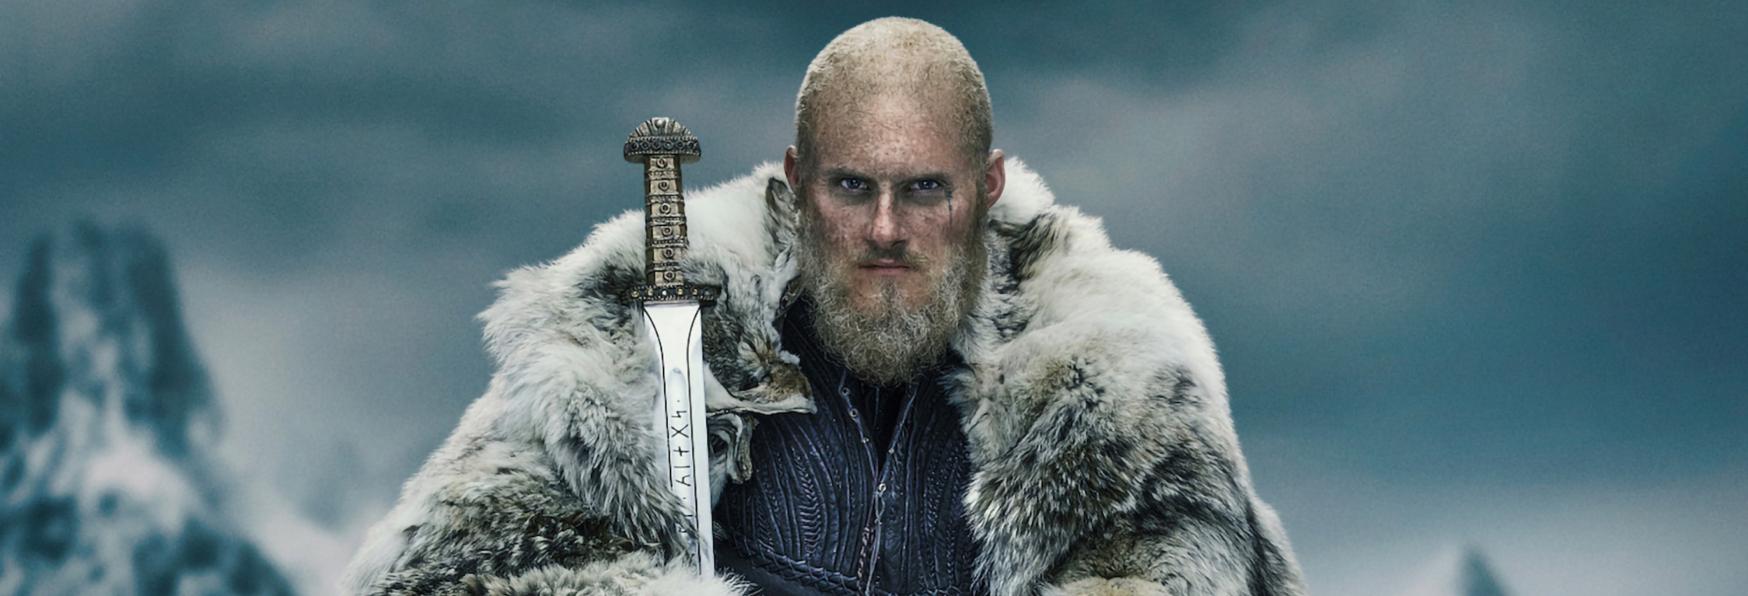 Vikings: la Recensione degli Episodi 6x01 e 6x02 della Serie TV targata History